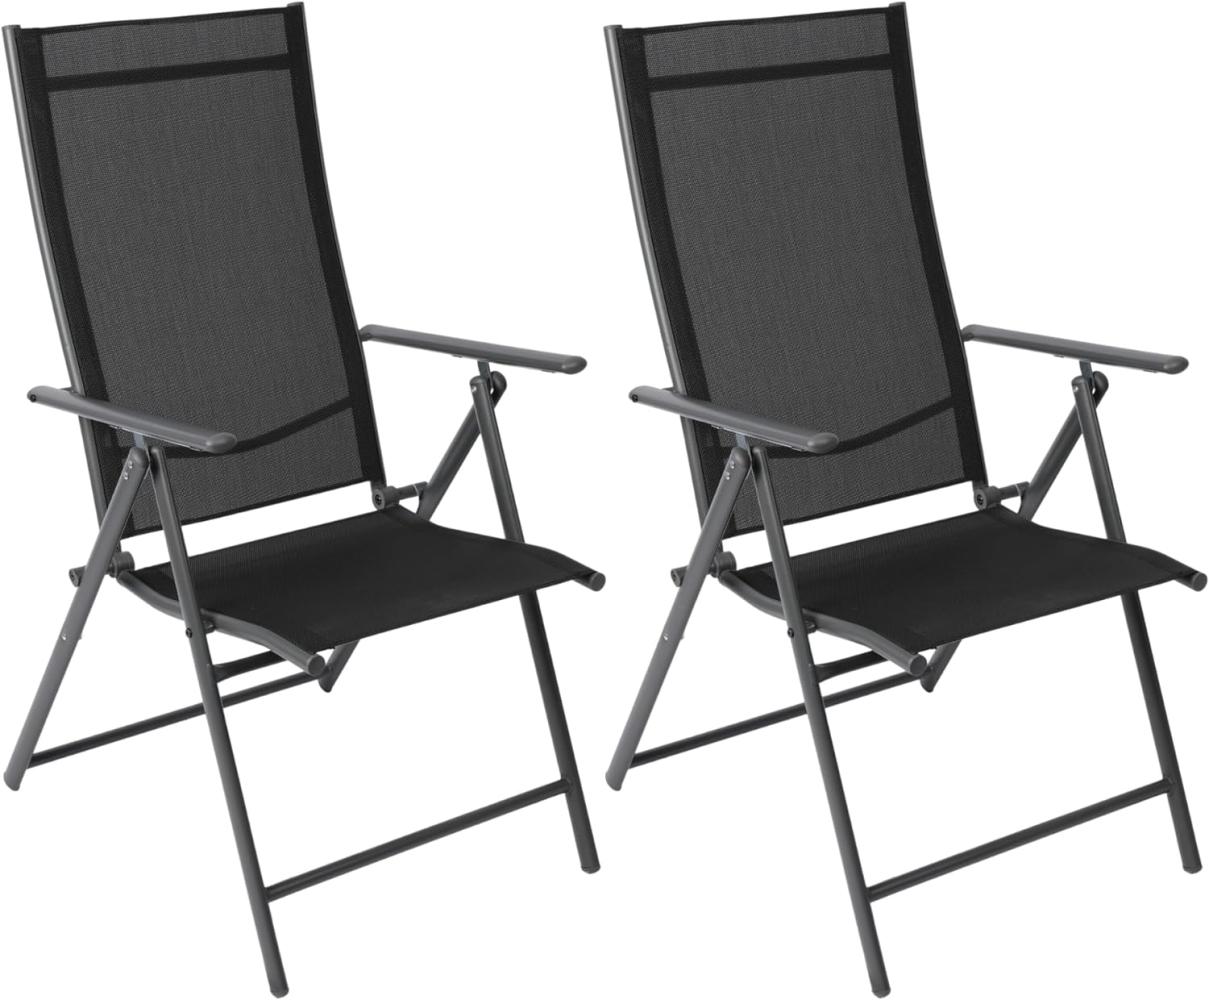 Albatros Gartenstühle 2er Set Aruba – Gartenstühle Klappbar mit robustem Metallgestell und hoher Belastbarkeit – Bequeme Klappstühle auch als Terrassenstühle oder Balkonstühle Bild 1